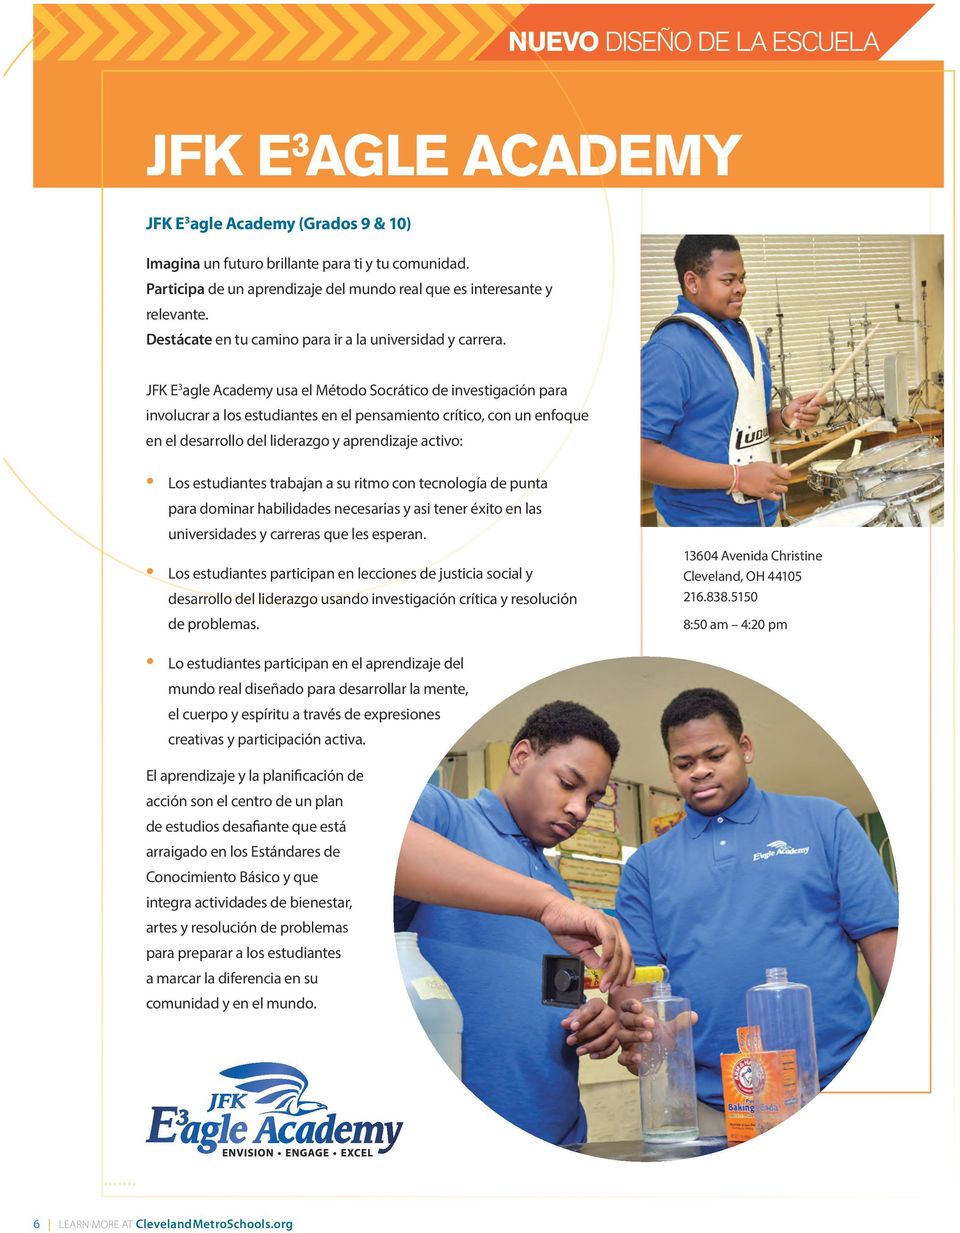 JFK E 3 agle Academy usa el Método Socrático de investigación para involucrar a los estudiantes en el pensamiento crítico, con un enfoque en el desarrollo del liderazgo y aprendizaje activo: Los